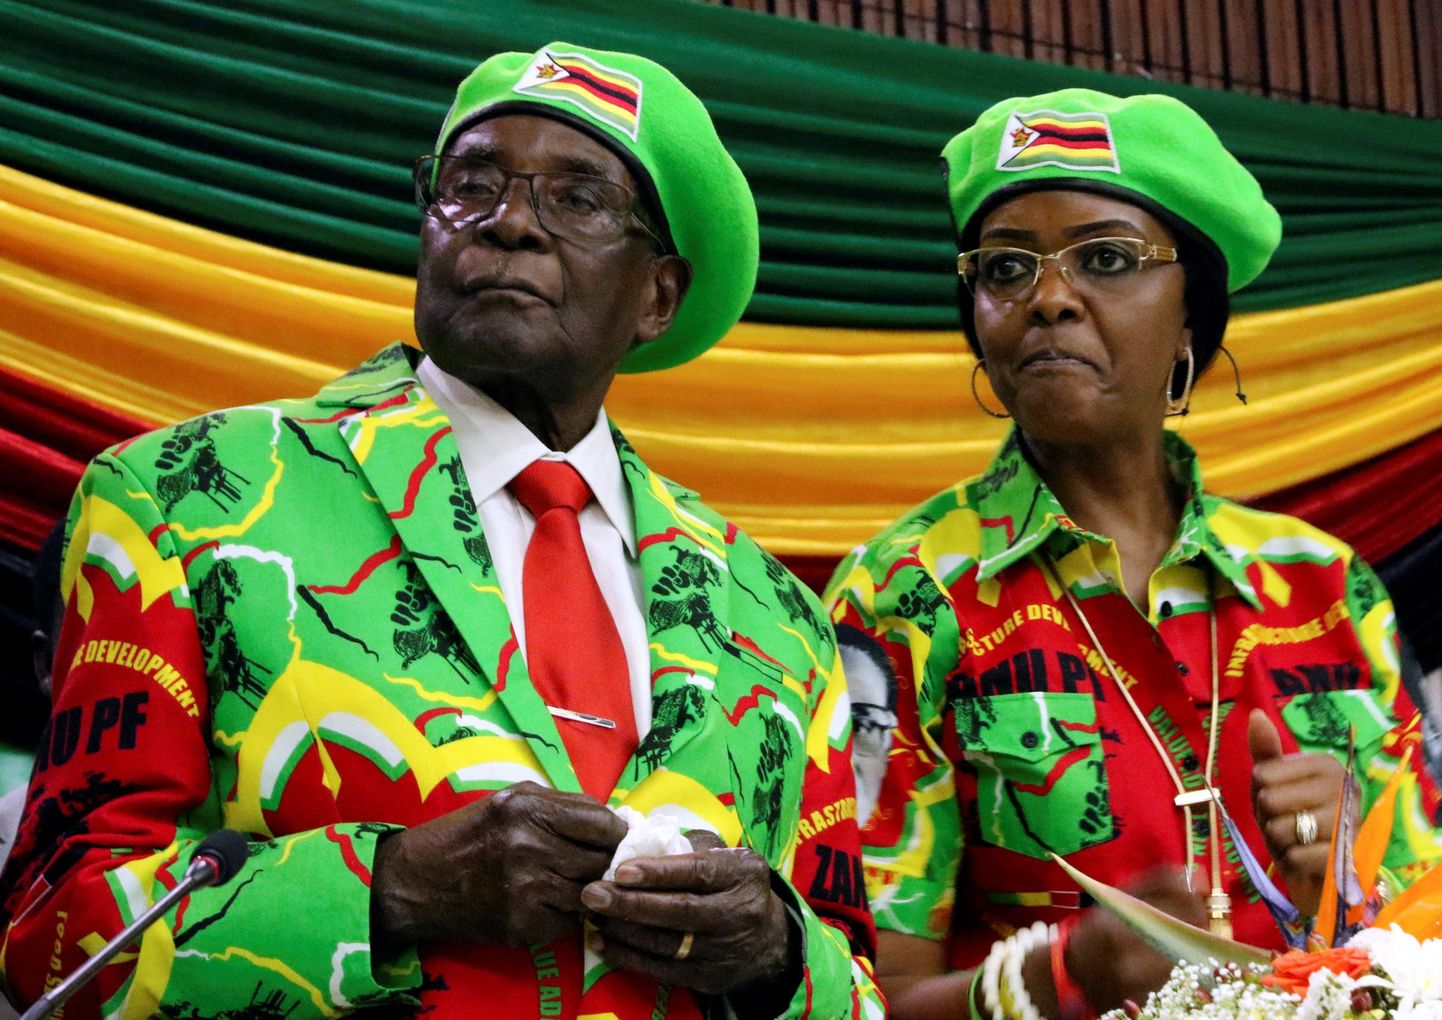 Robert ja Grace Mugabe selle aasta oktoobris Zimbabwe võimupartei ZANU-PFi parteiüritusel Harares.